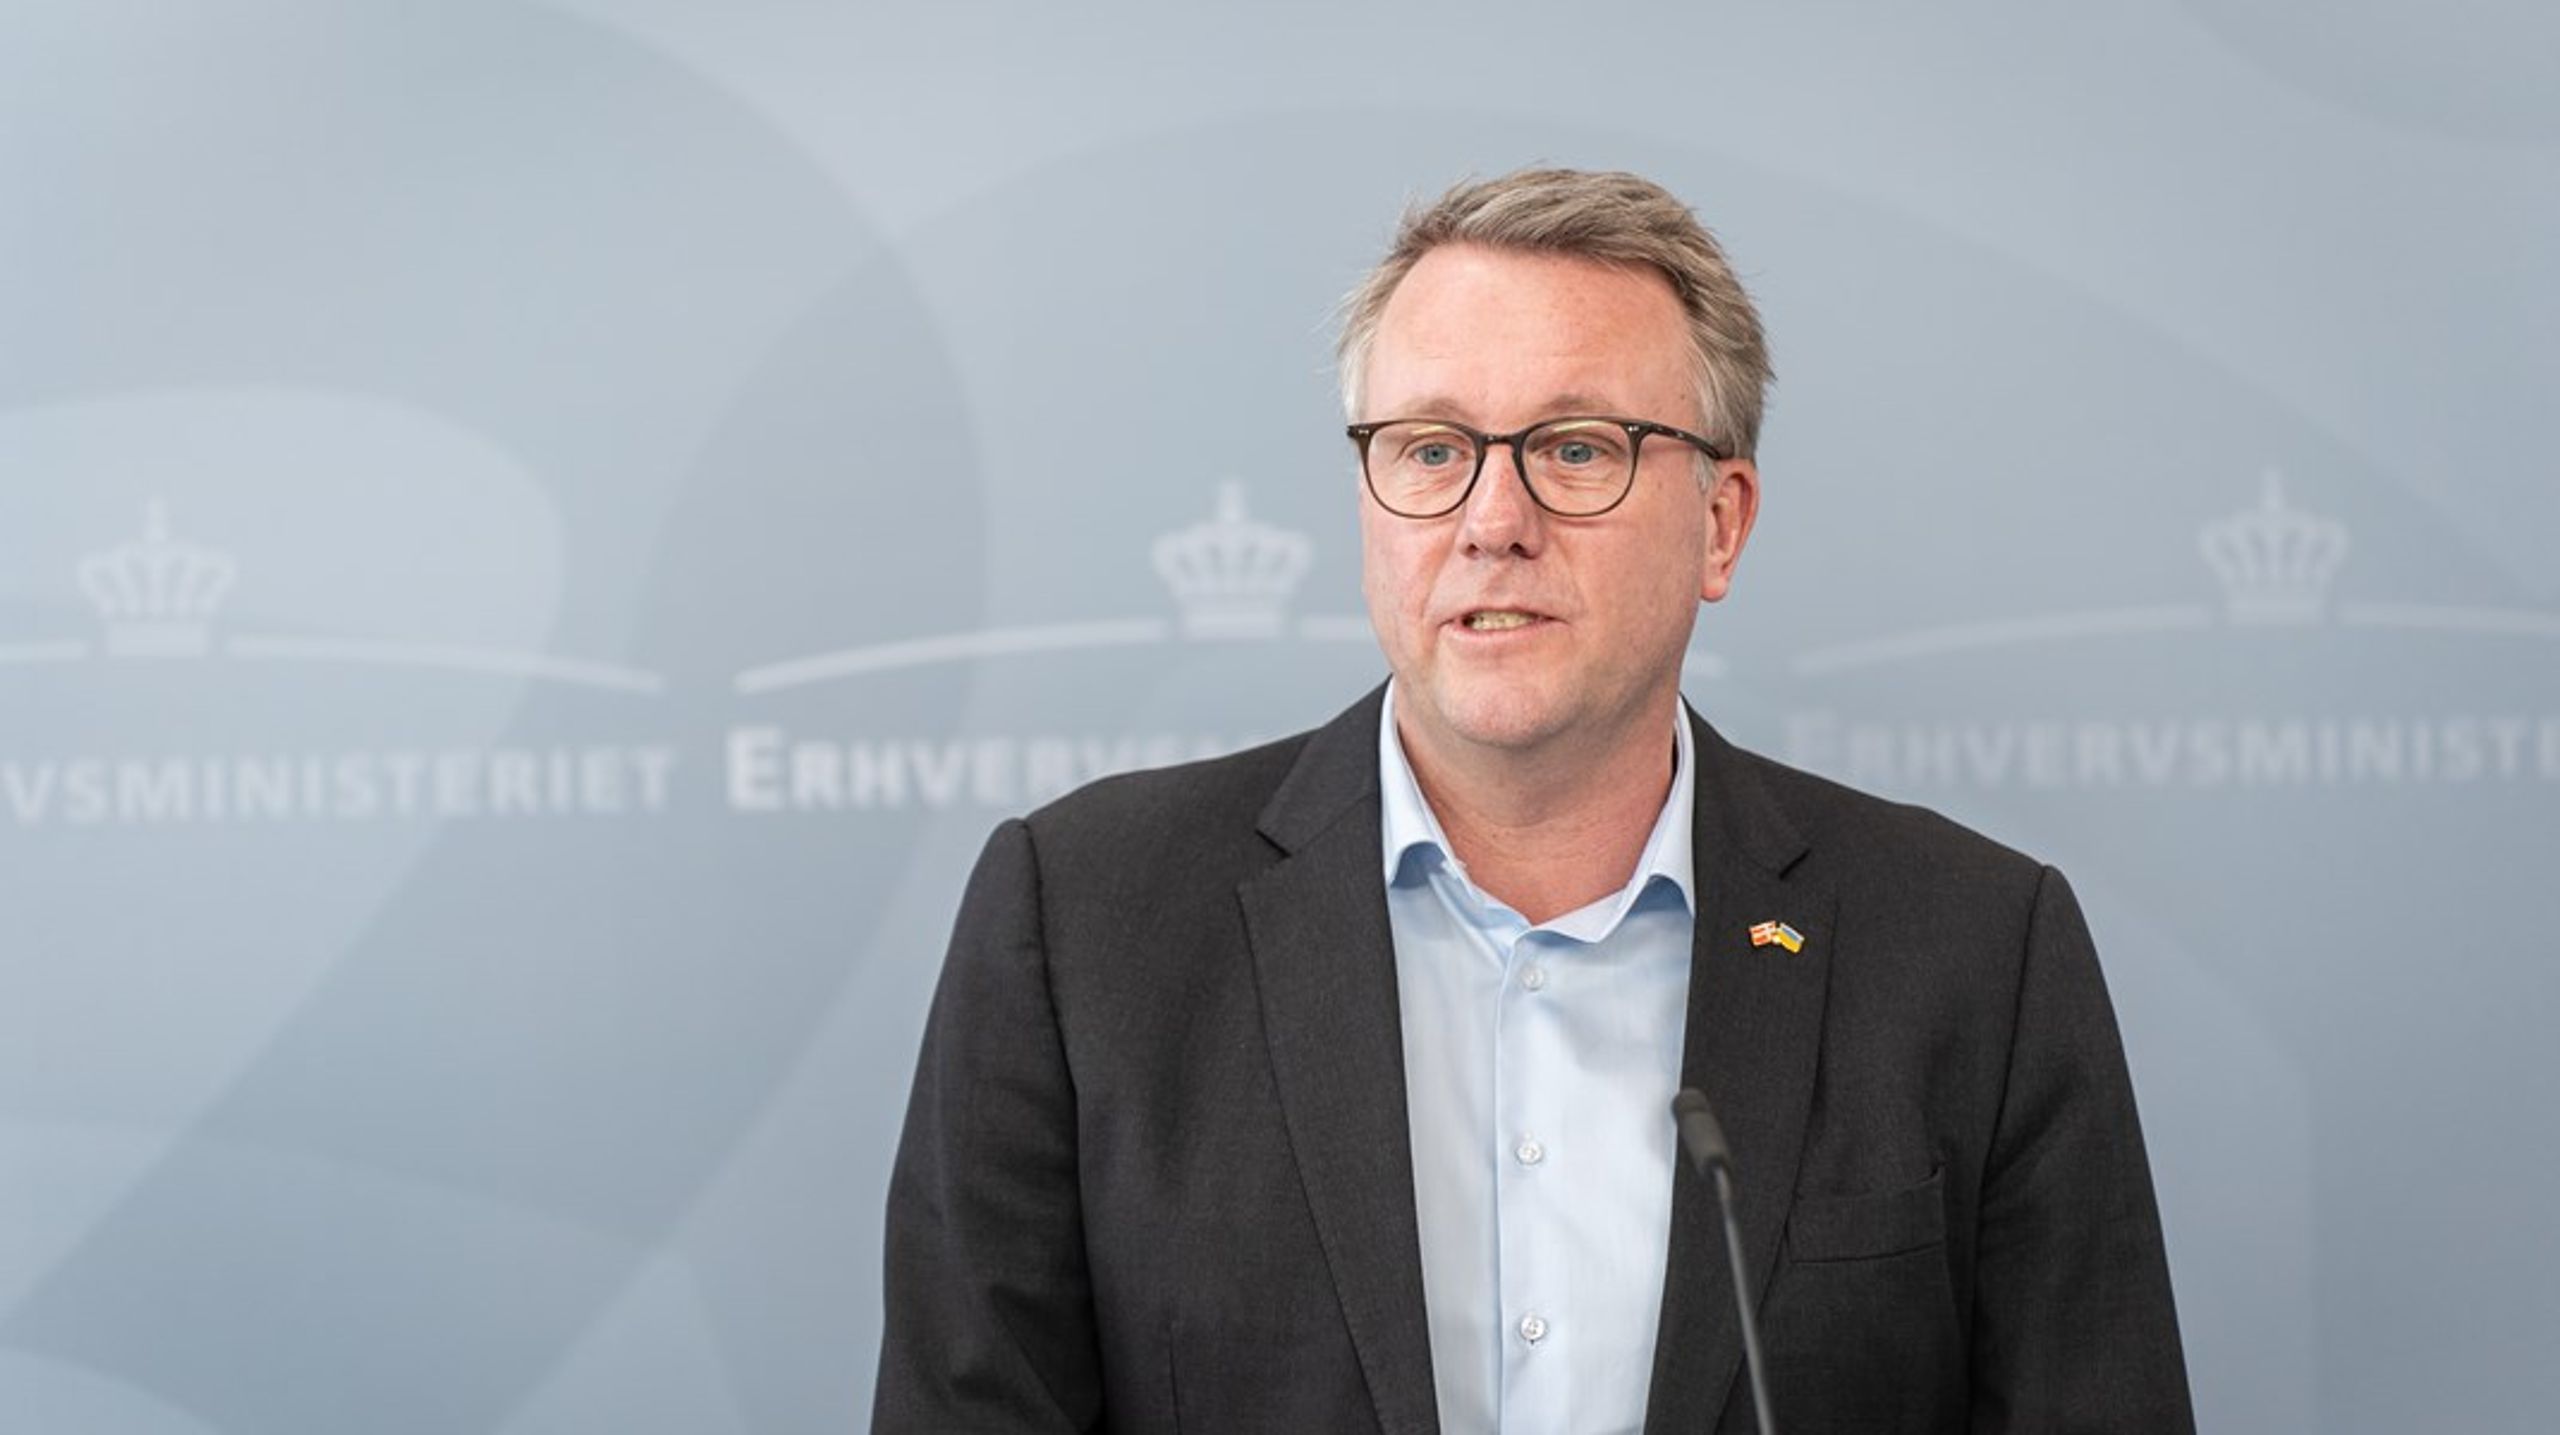 Erhvervsminister Morten Bødskov (S) håber, at udvalget vil&nbsp;sikre, at midlerne&nbsp;bliver brugt bedst muligt til at reducere Danmarks udledninger og skabe grøn vækst.&nbsp;